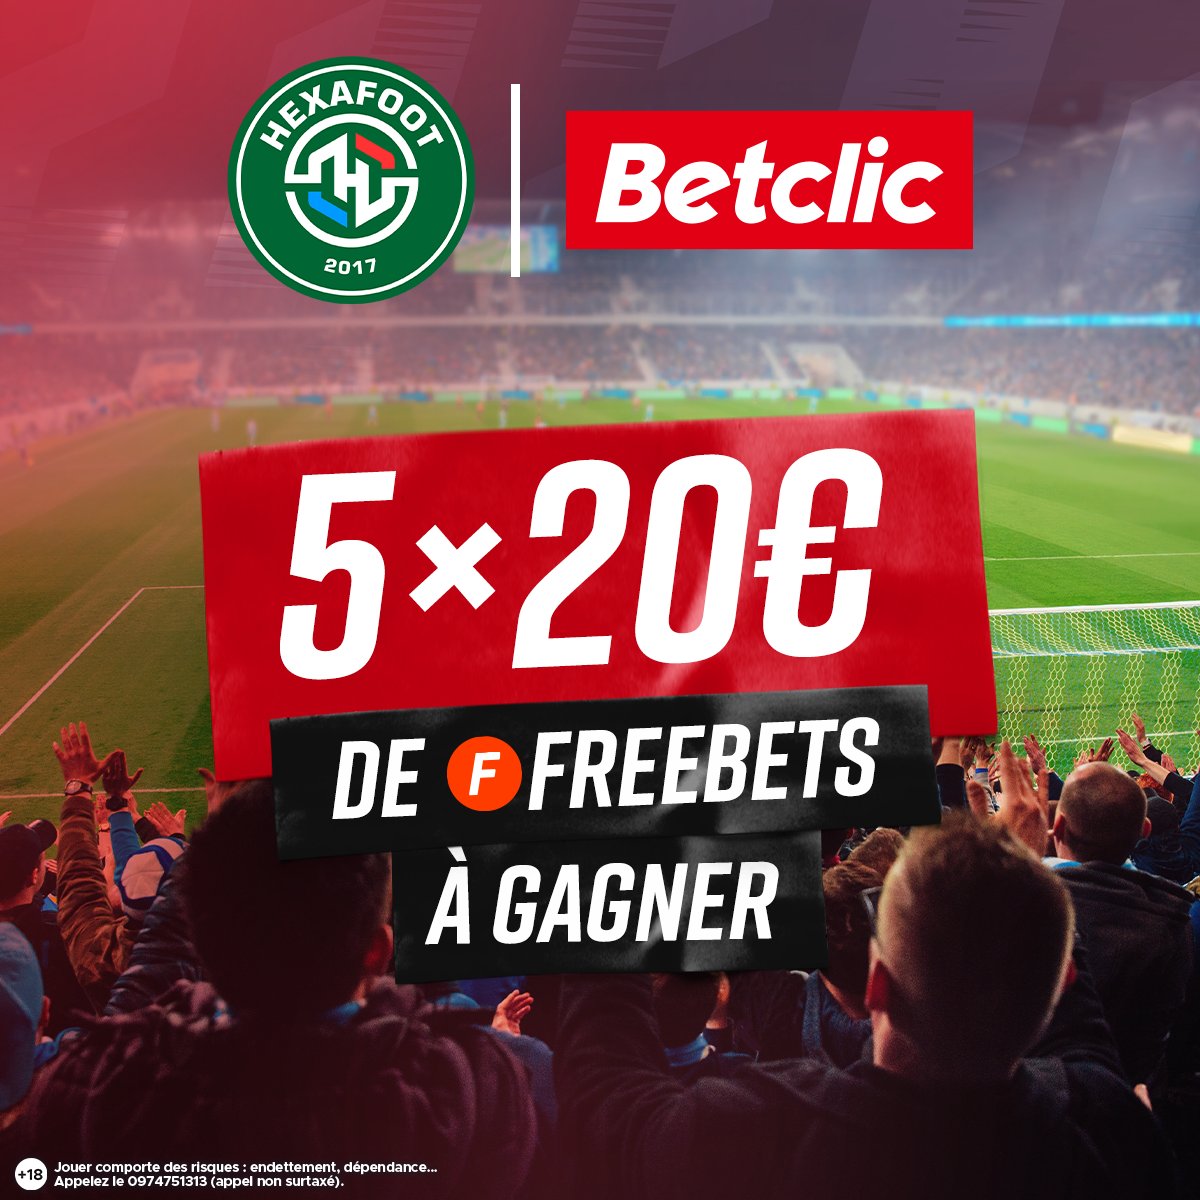 À l'occasion de la 37ème journée de @Ligue1UberEats, on vous fait gagner 5×20€ de freebets ! 🤑
 
RT + Follow @Betclic & @HexaFootFR pour participer.

Tirage au sort le 28/05. Bonne chance ! 🍀